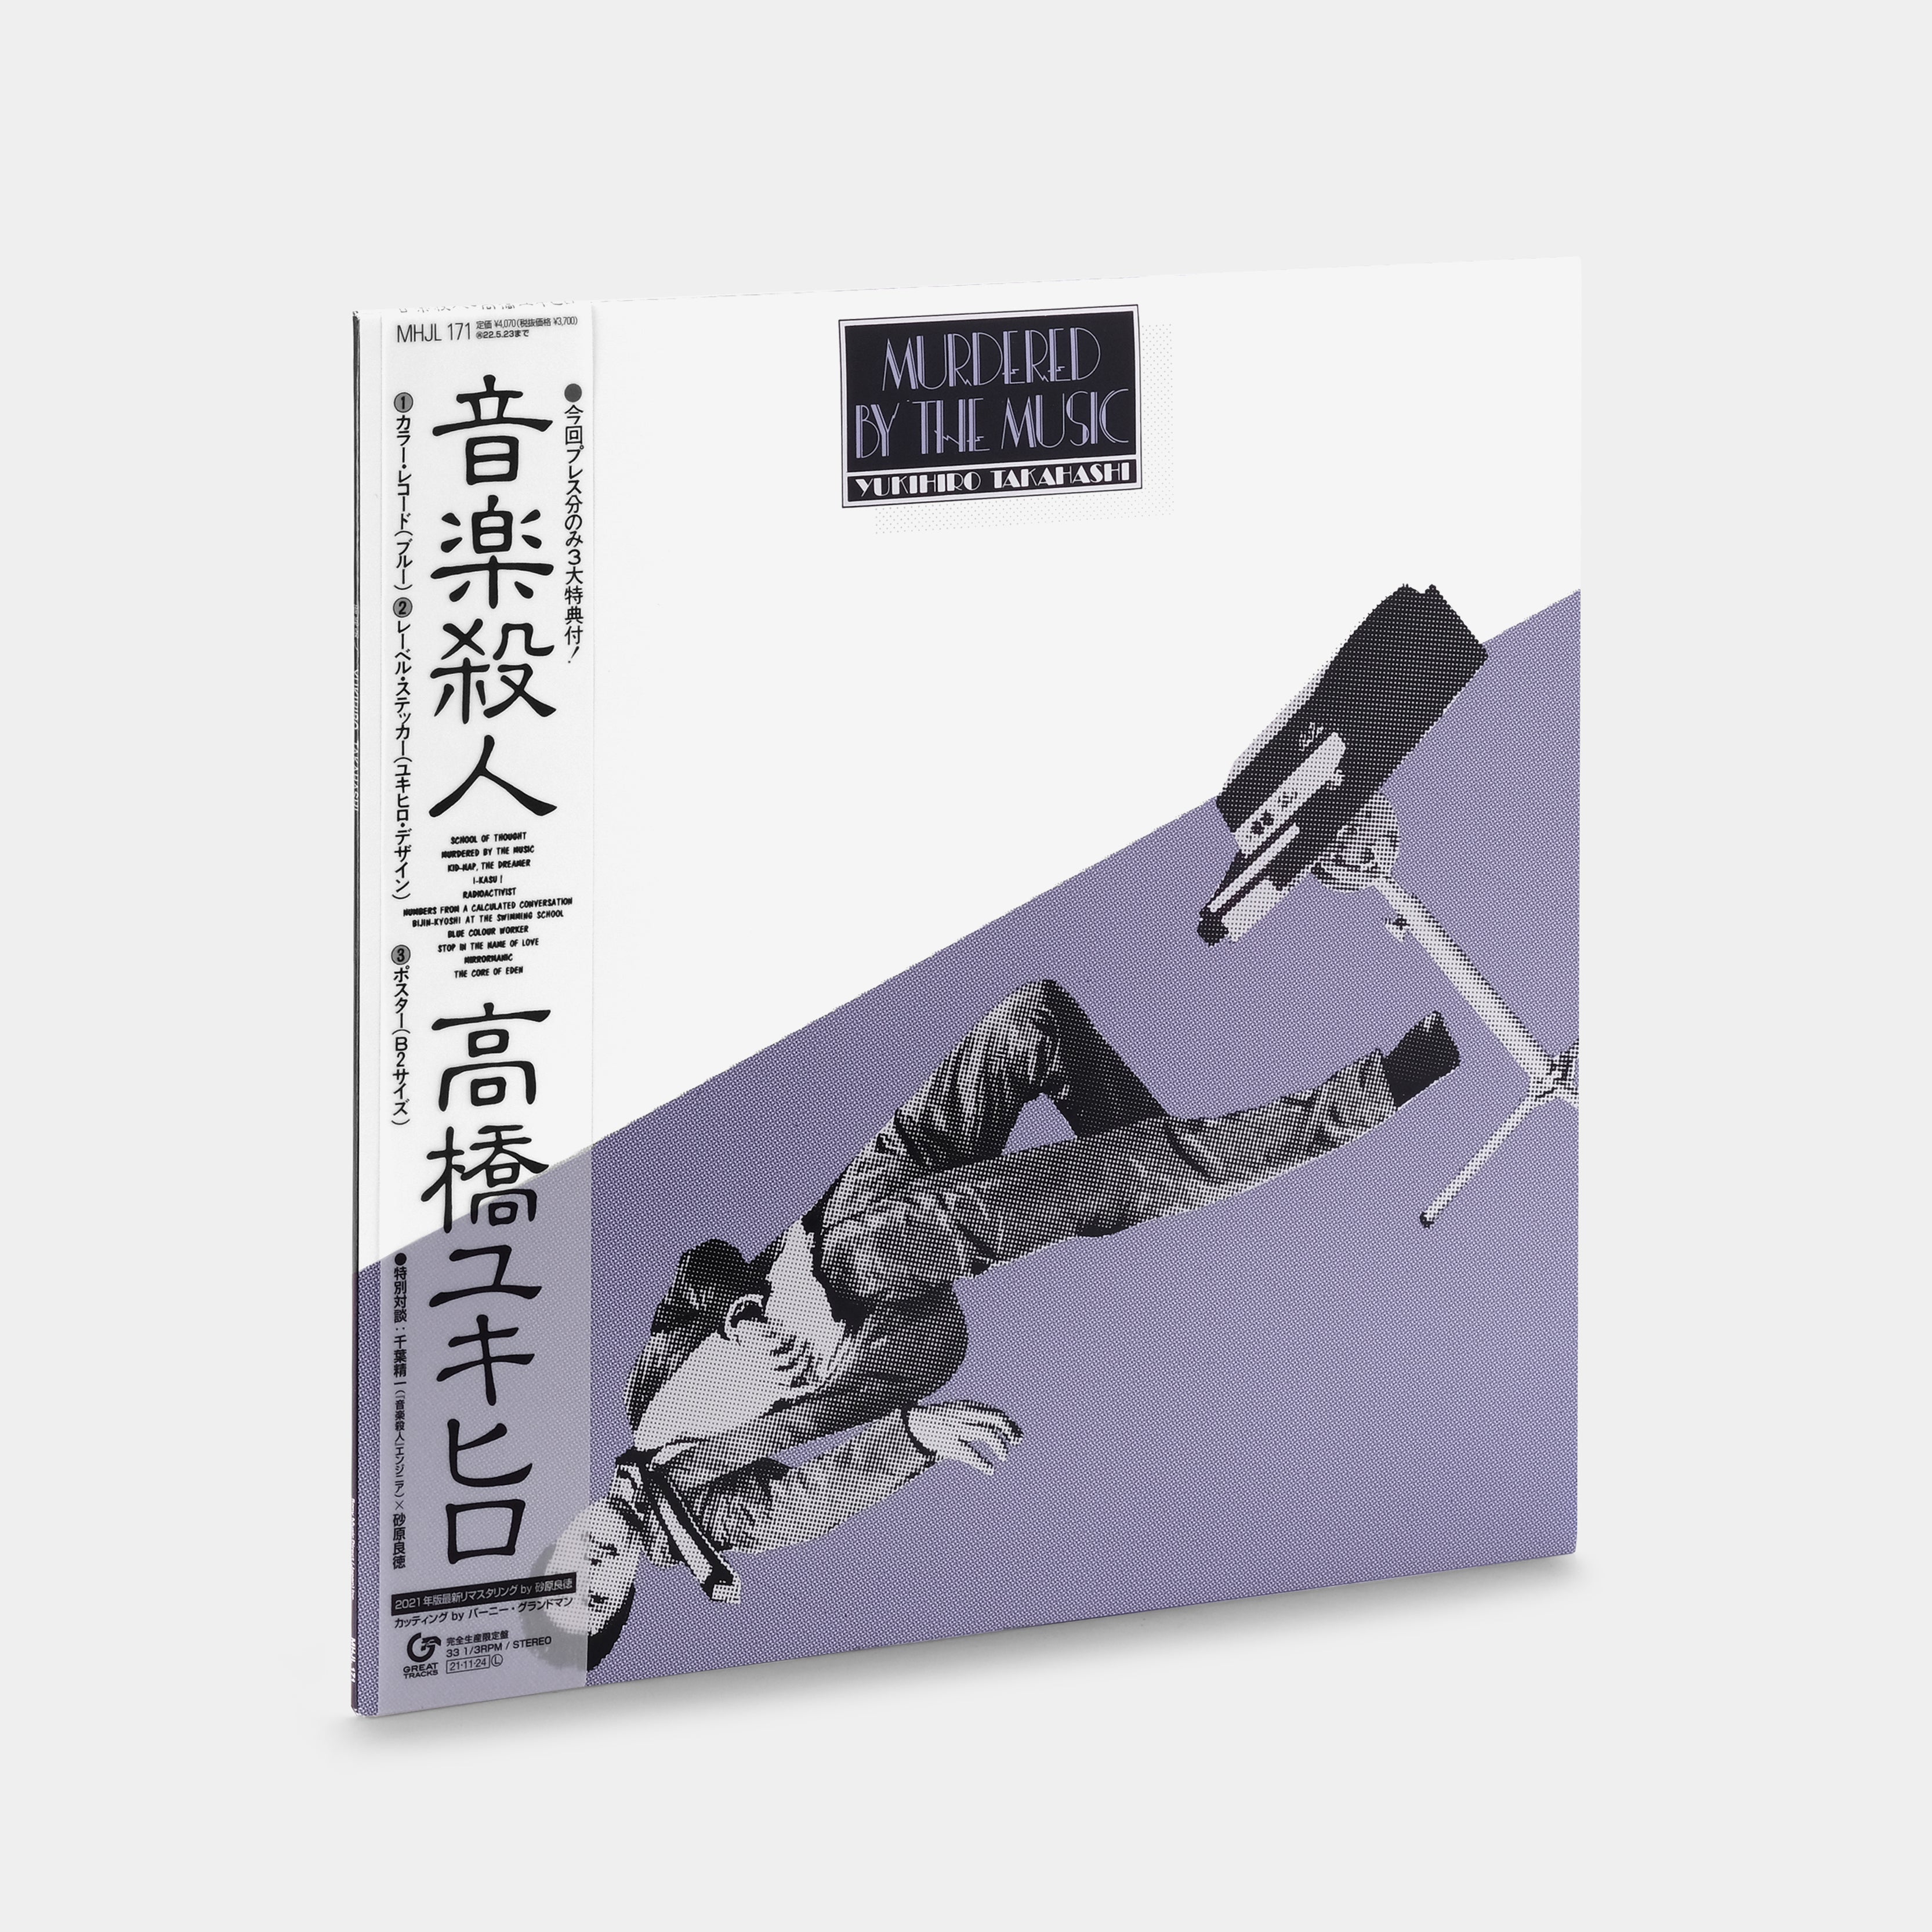 Yukihiro Takahashi - Murdered By The Music LP Blue Vinyl Record